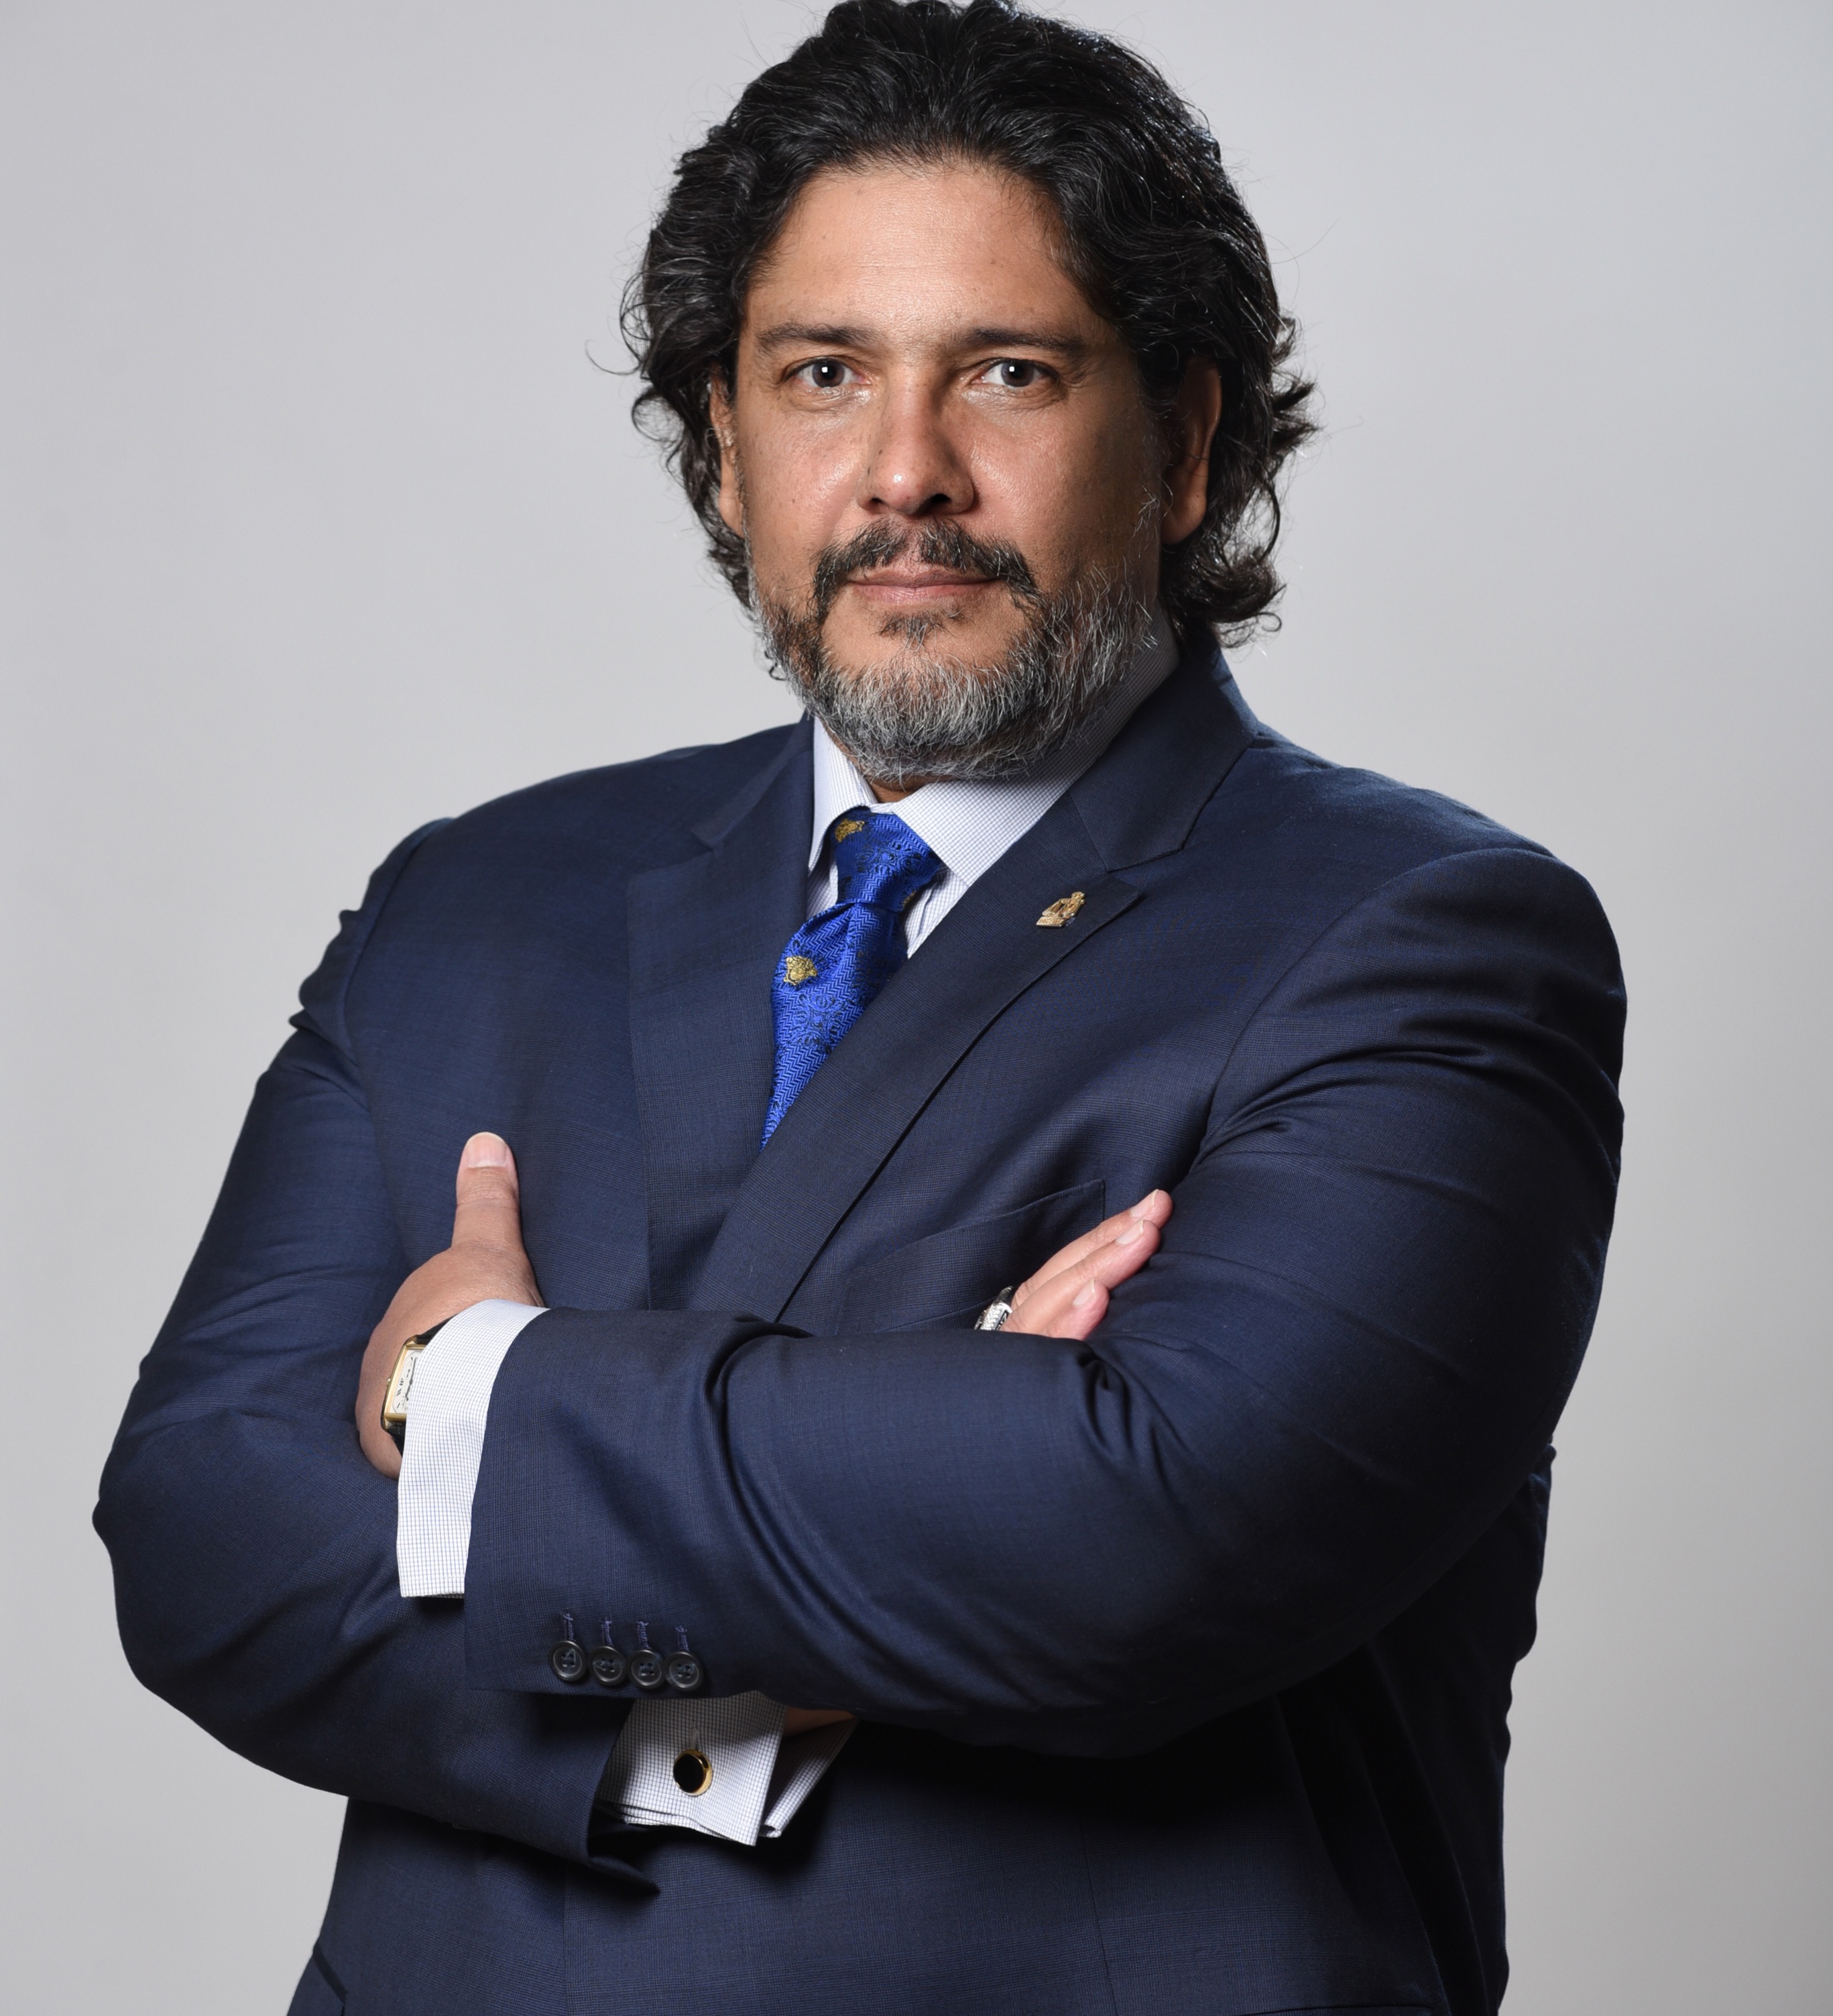 Jorge Luis Lopez